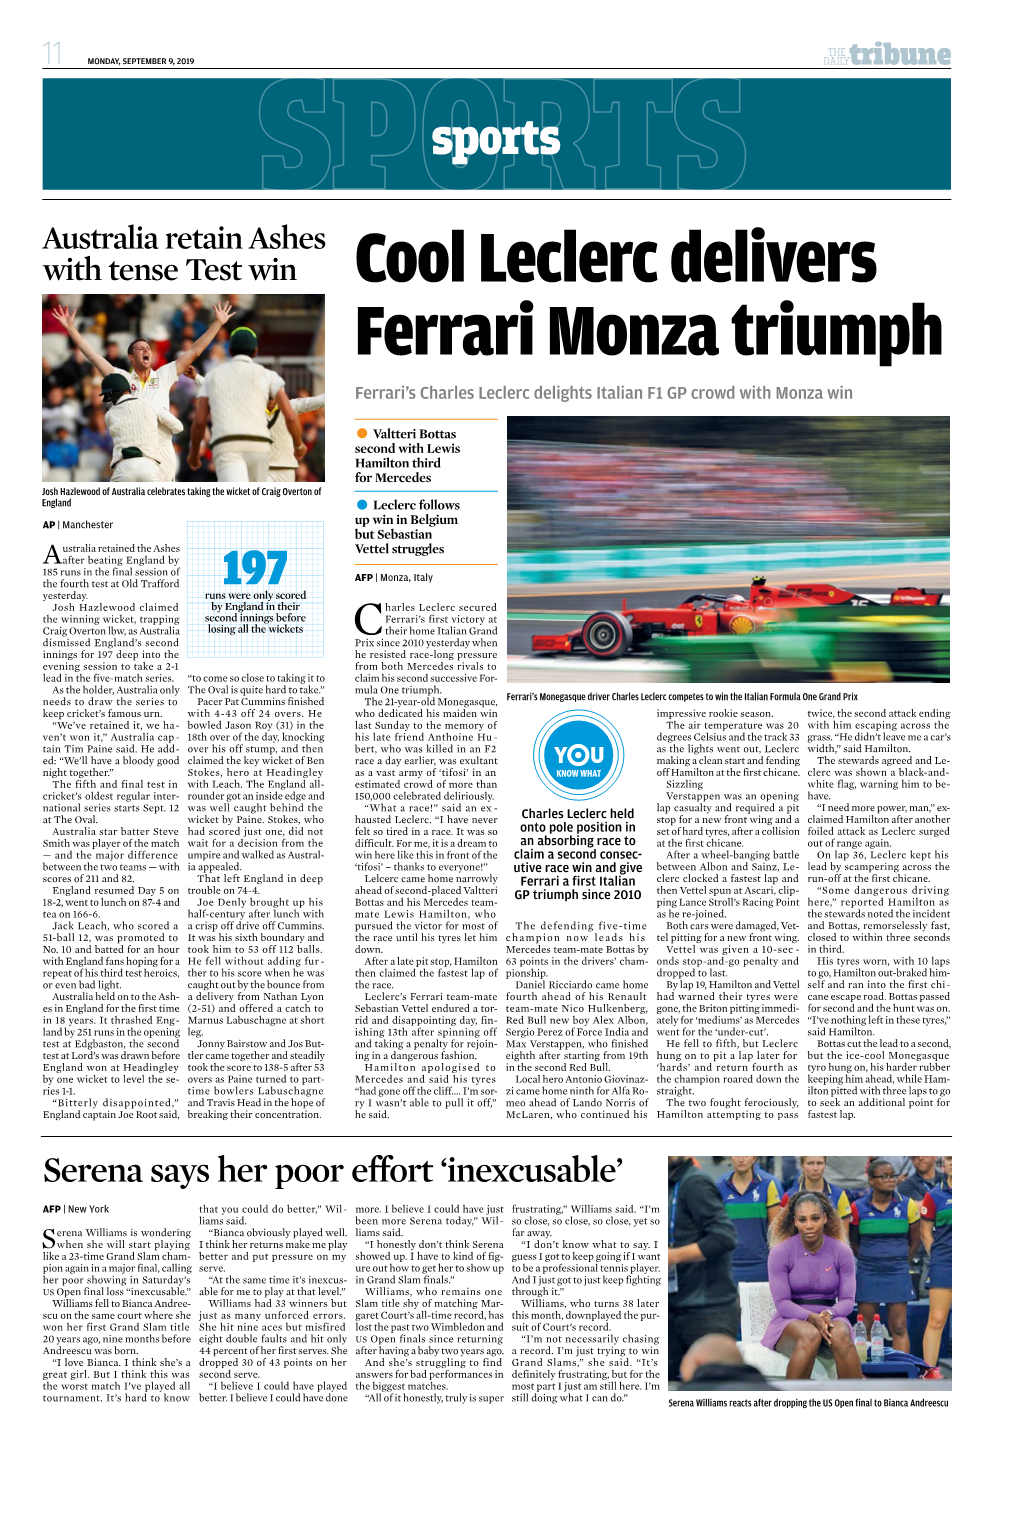 Cool Leclerc Delivers Ferrari Monza Triumph Ferrari’S Charles Leclerc Delights Italian F1 GP Crowd with Monza Win